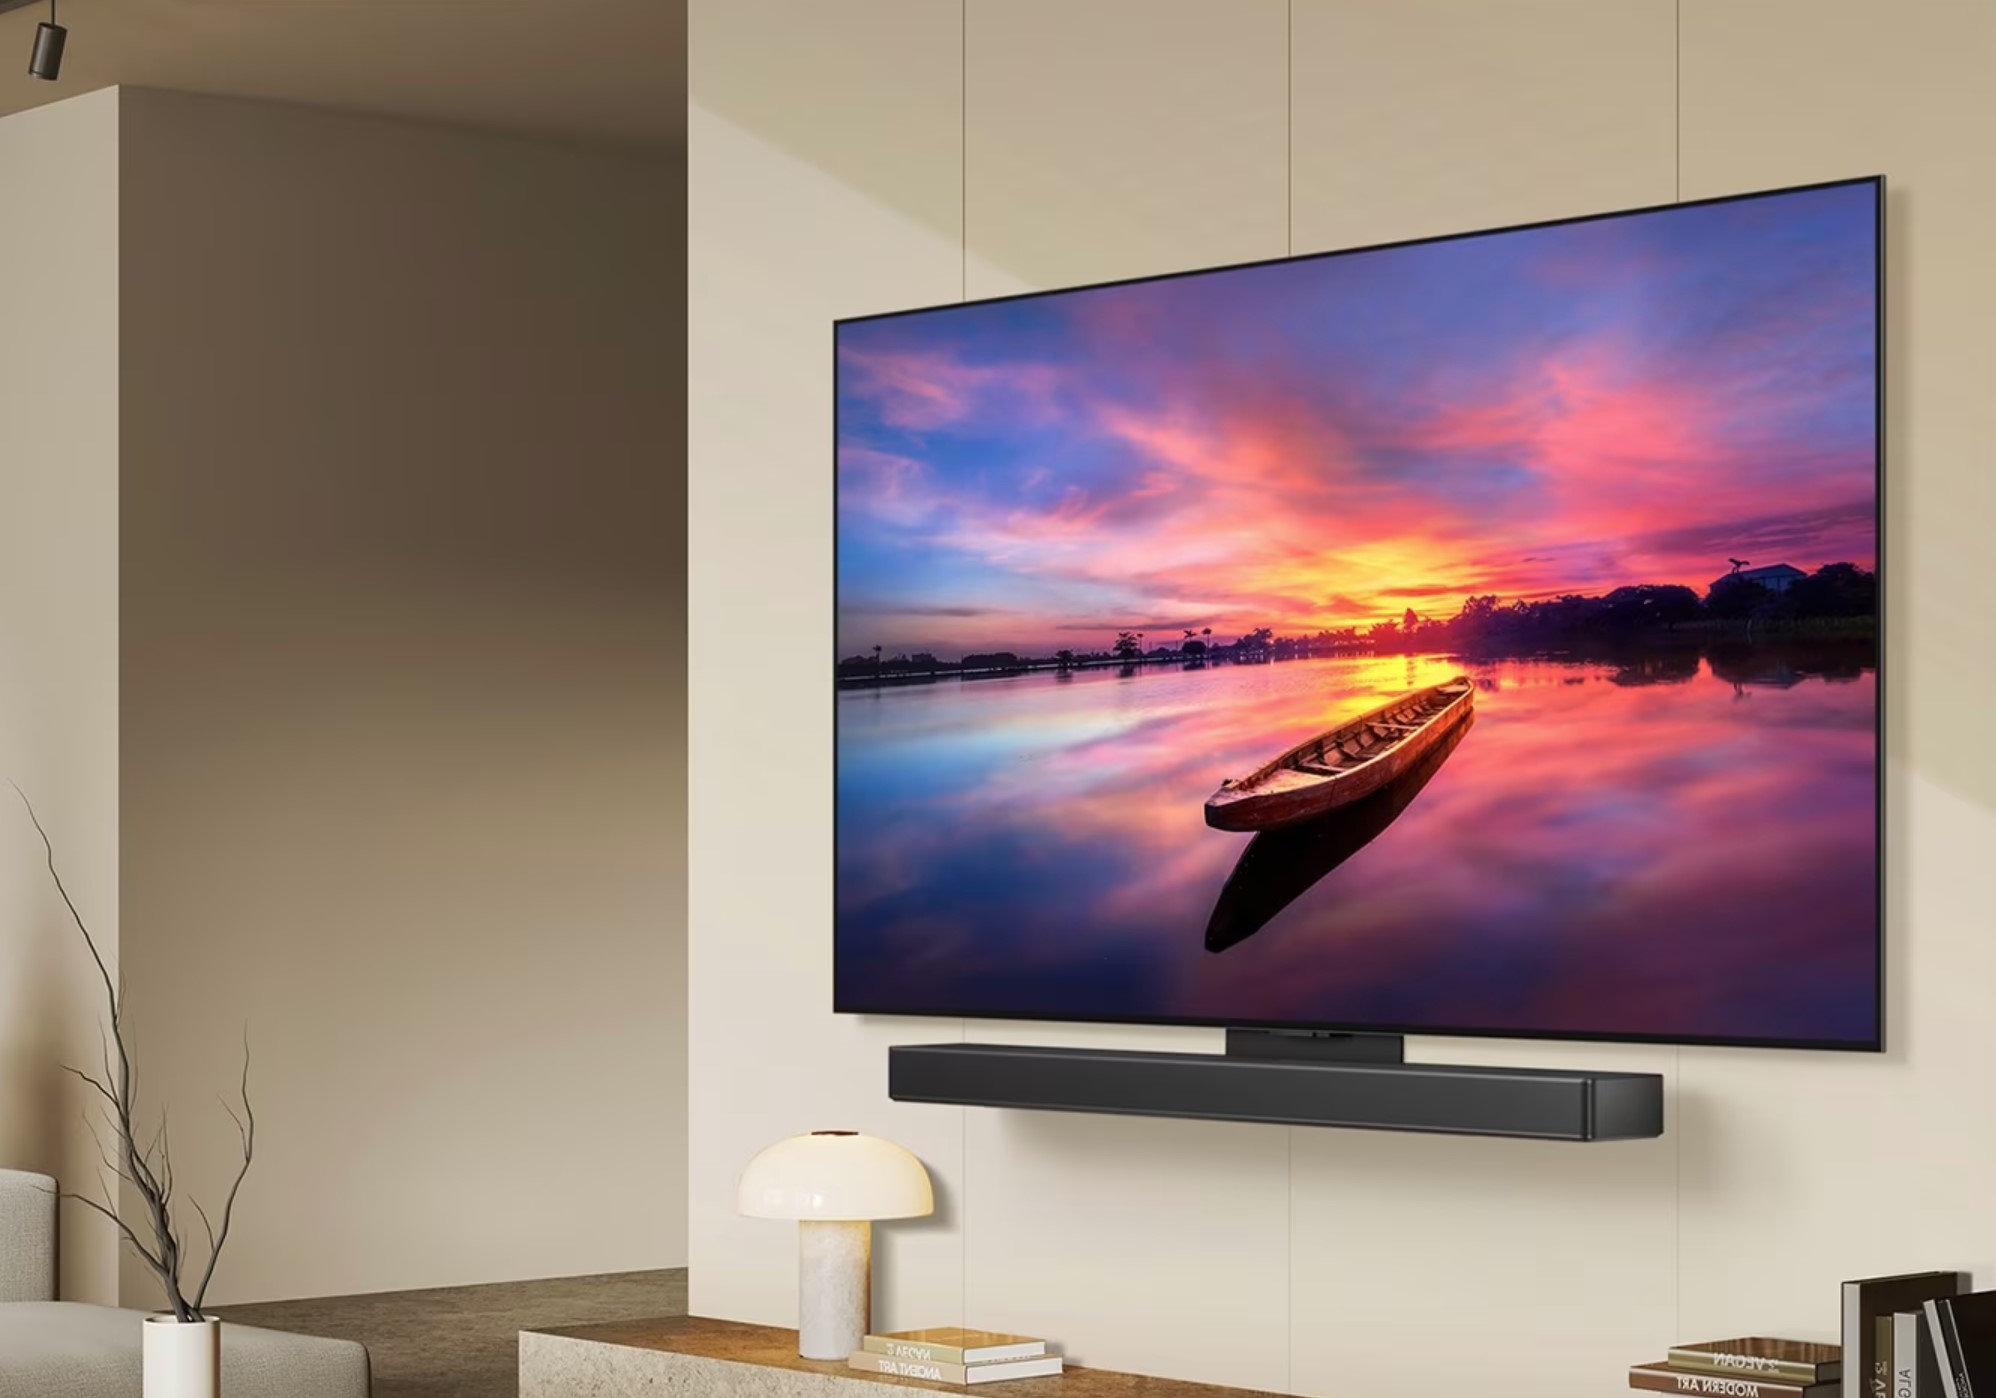 LG C4 evo OLED – the Goldilocks OLED TV – just right (AV review)